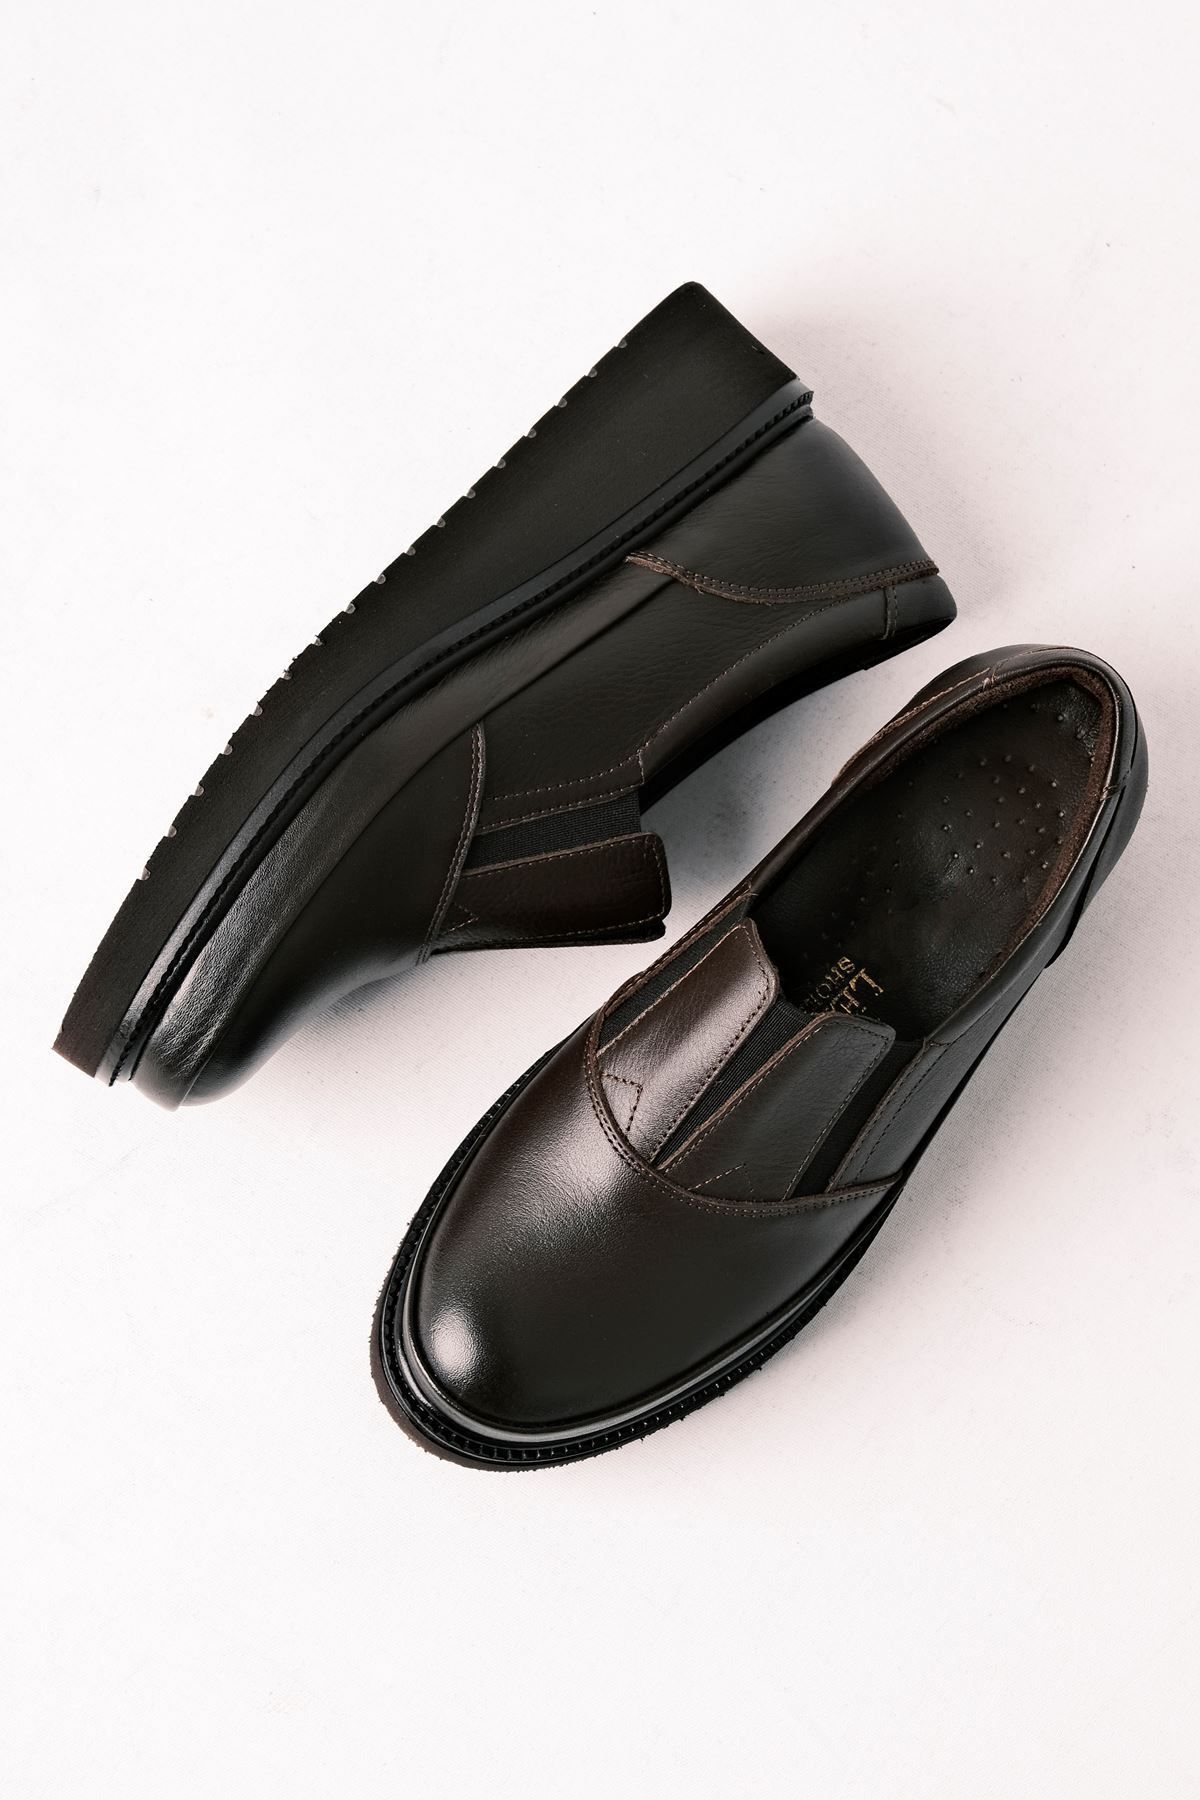 LAL SHOES & BAGS Brıd Kadın Hakiki Deri Lastik Detaylı Günlük Ayakkabı-Kahverengi